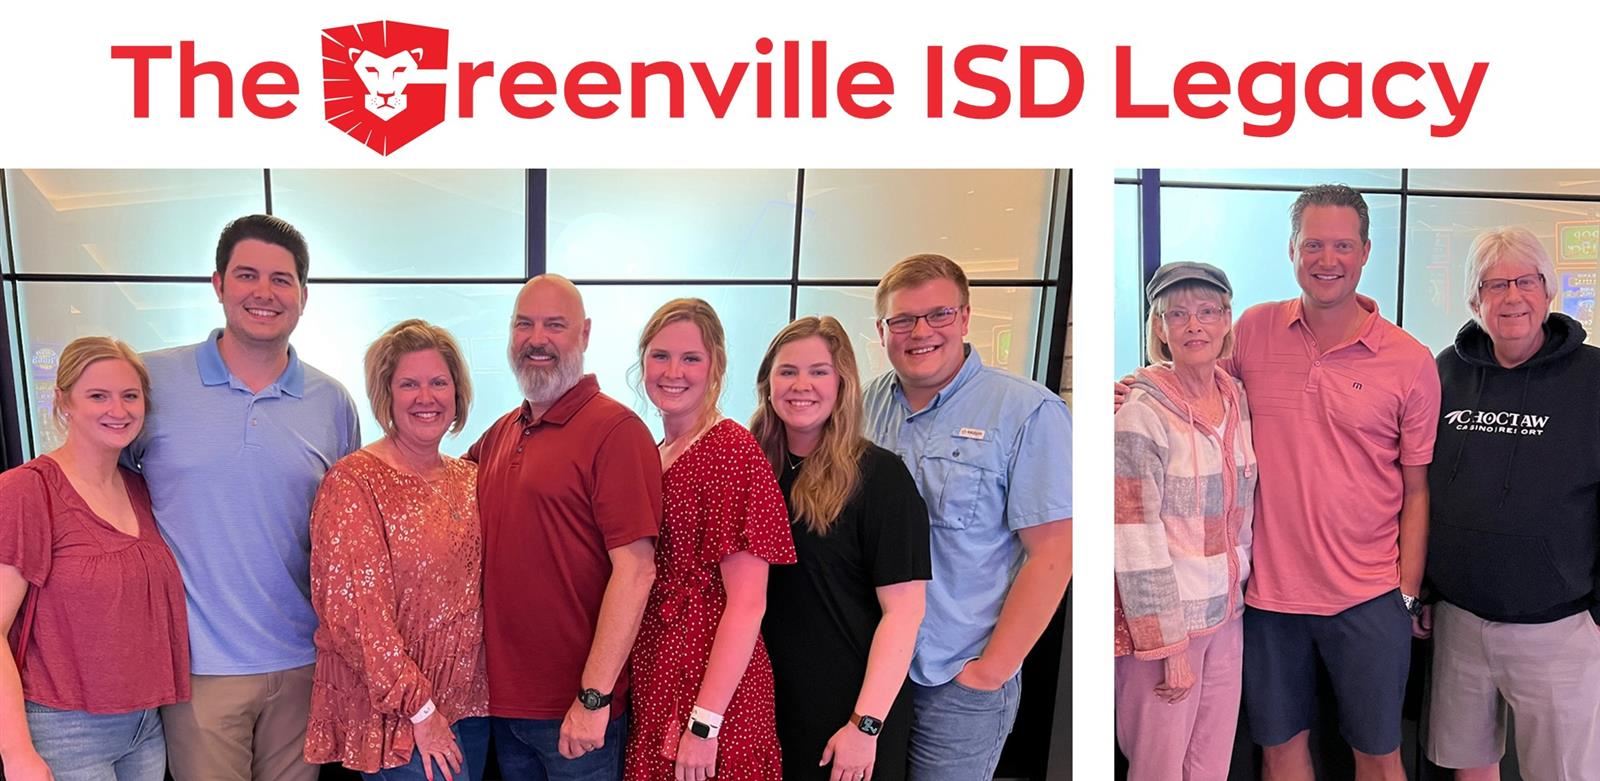 The Greenville ISD Legacy - The Tarpley-Wade Family